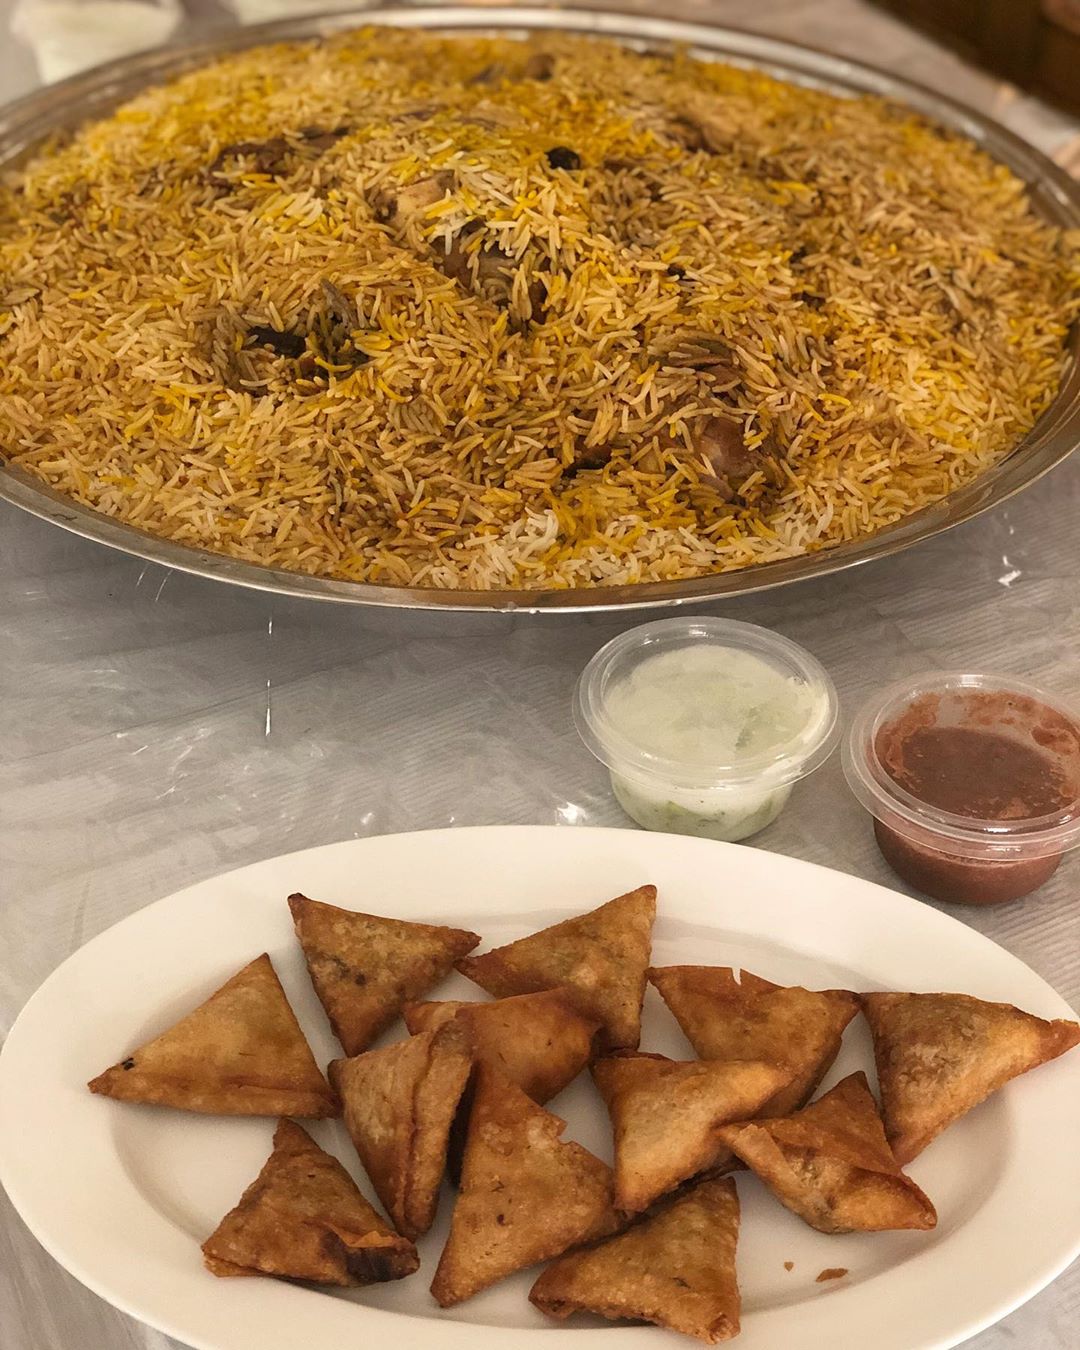  اشهر مطاعم بخاري في جدة